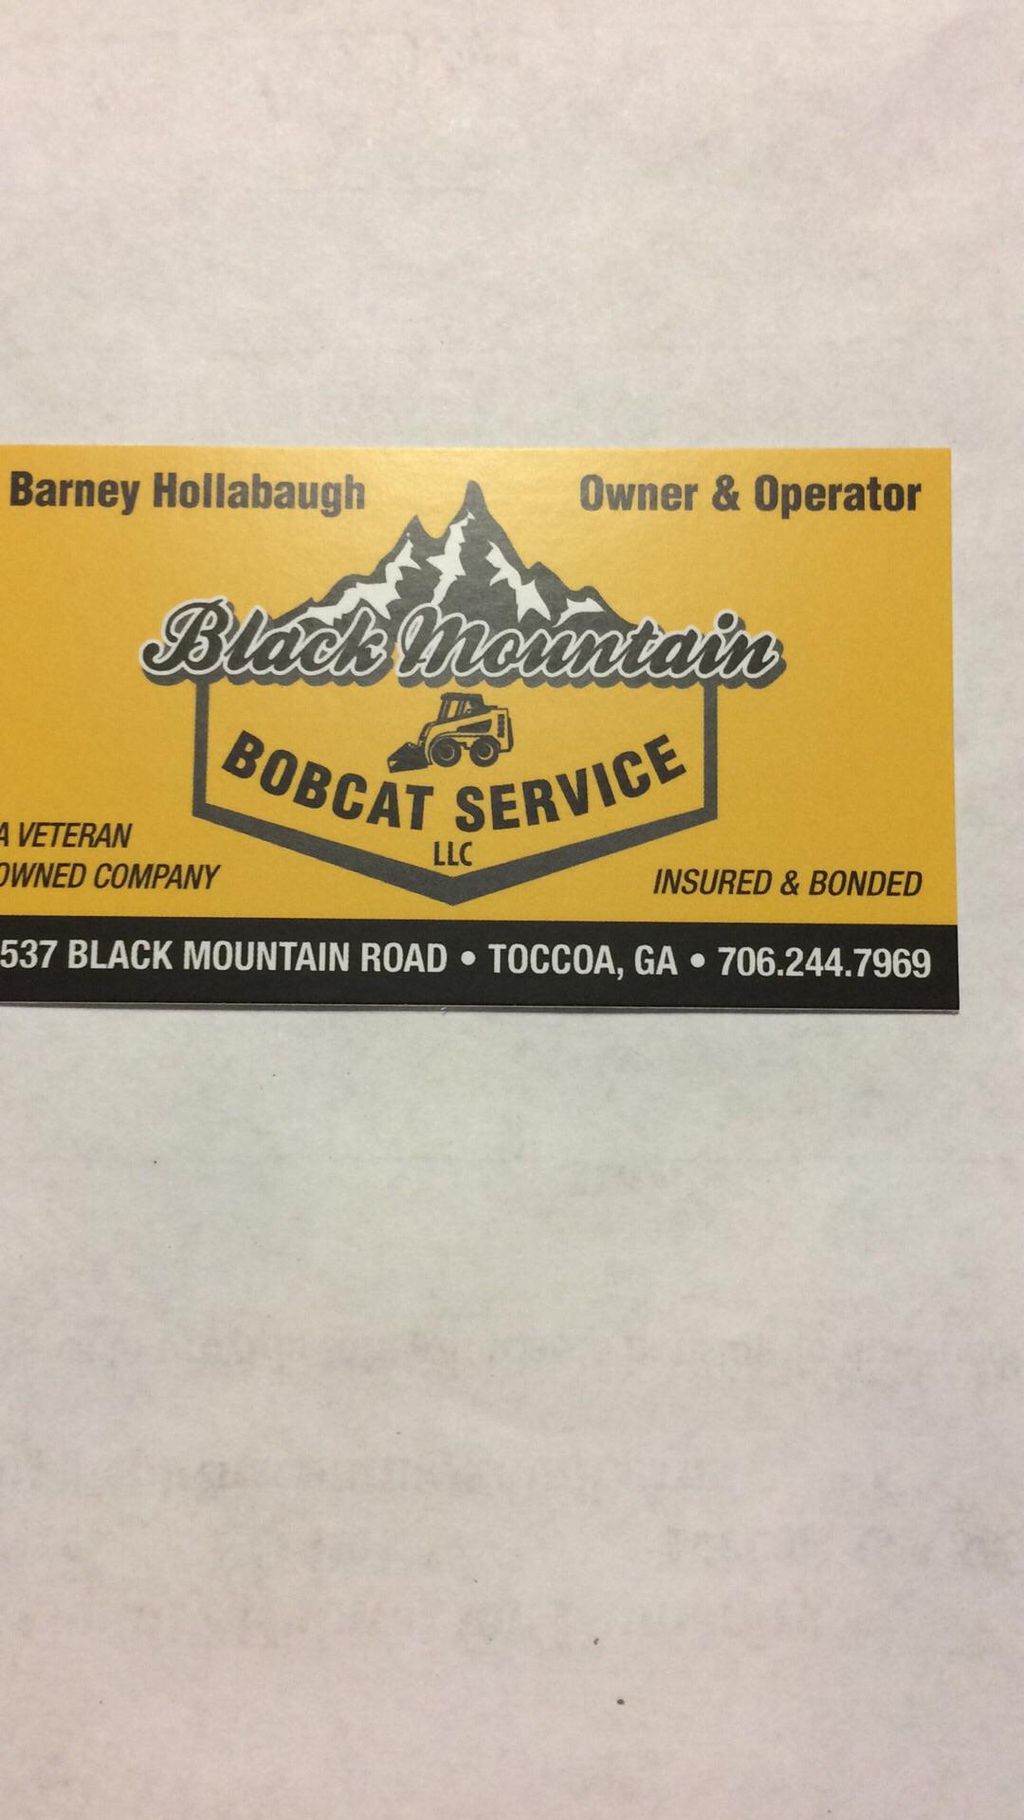 Black Mountain Bobcat Services